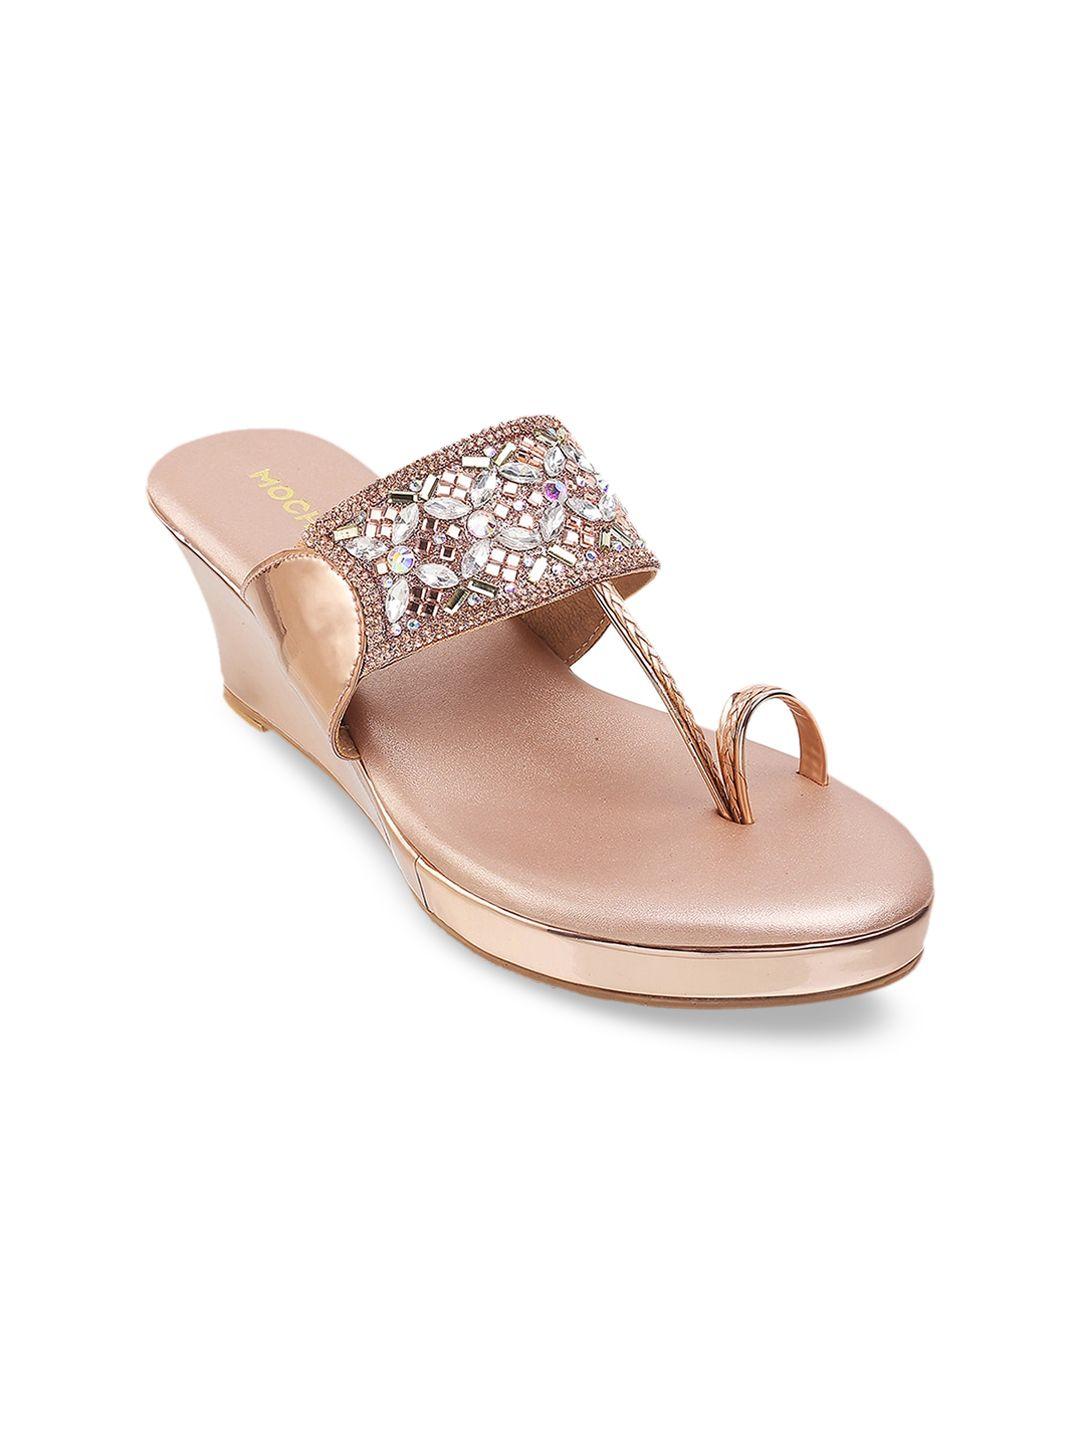 Mochi Rose Gold-Toned Embellished Open Toe Wedge Sandals